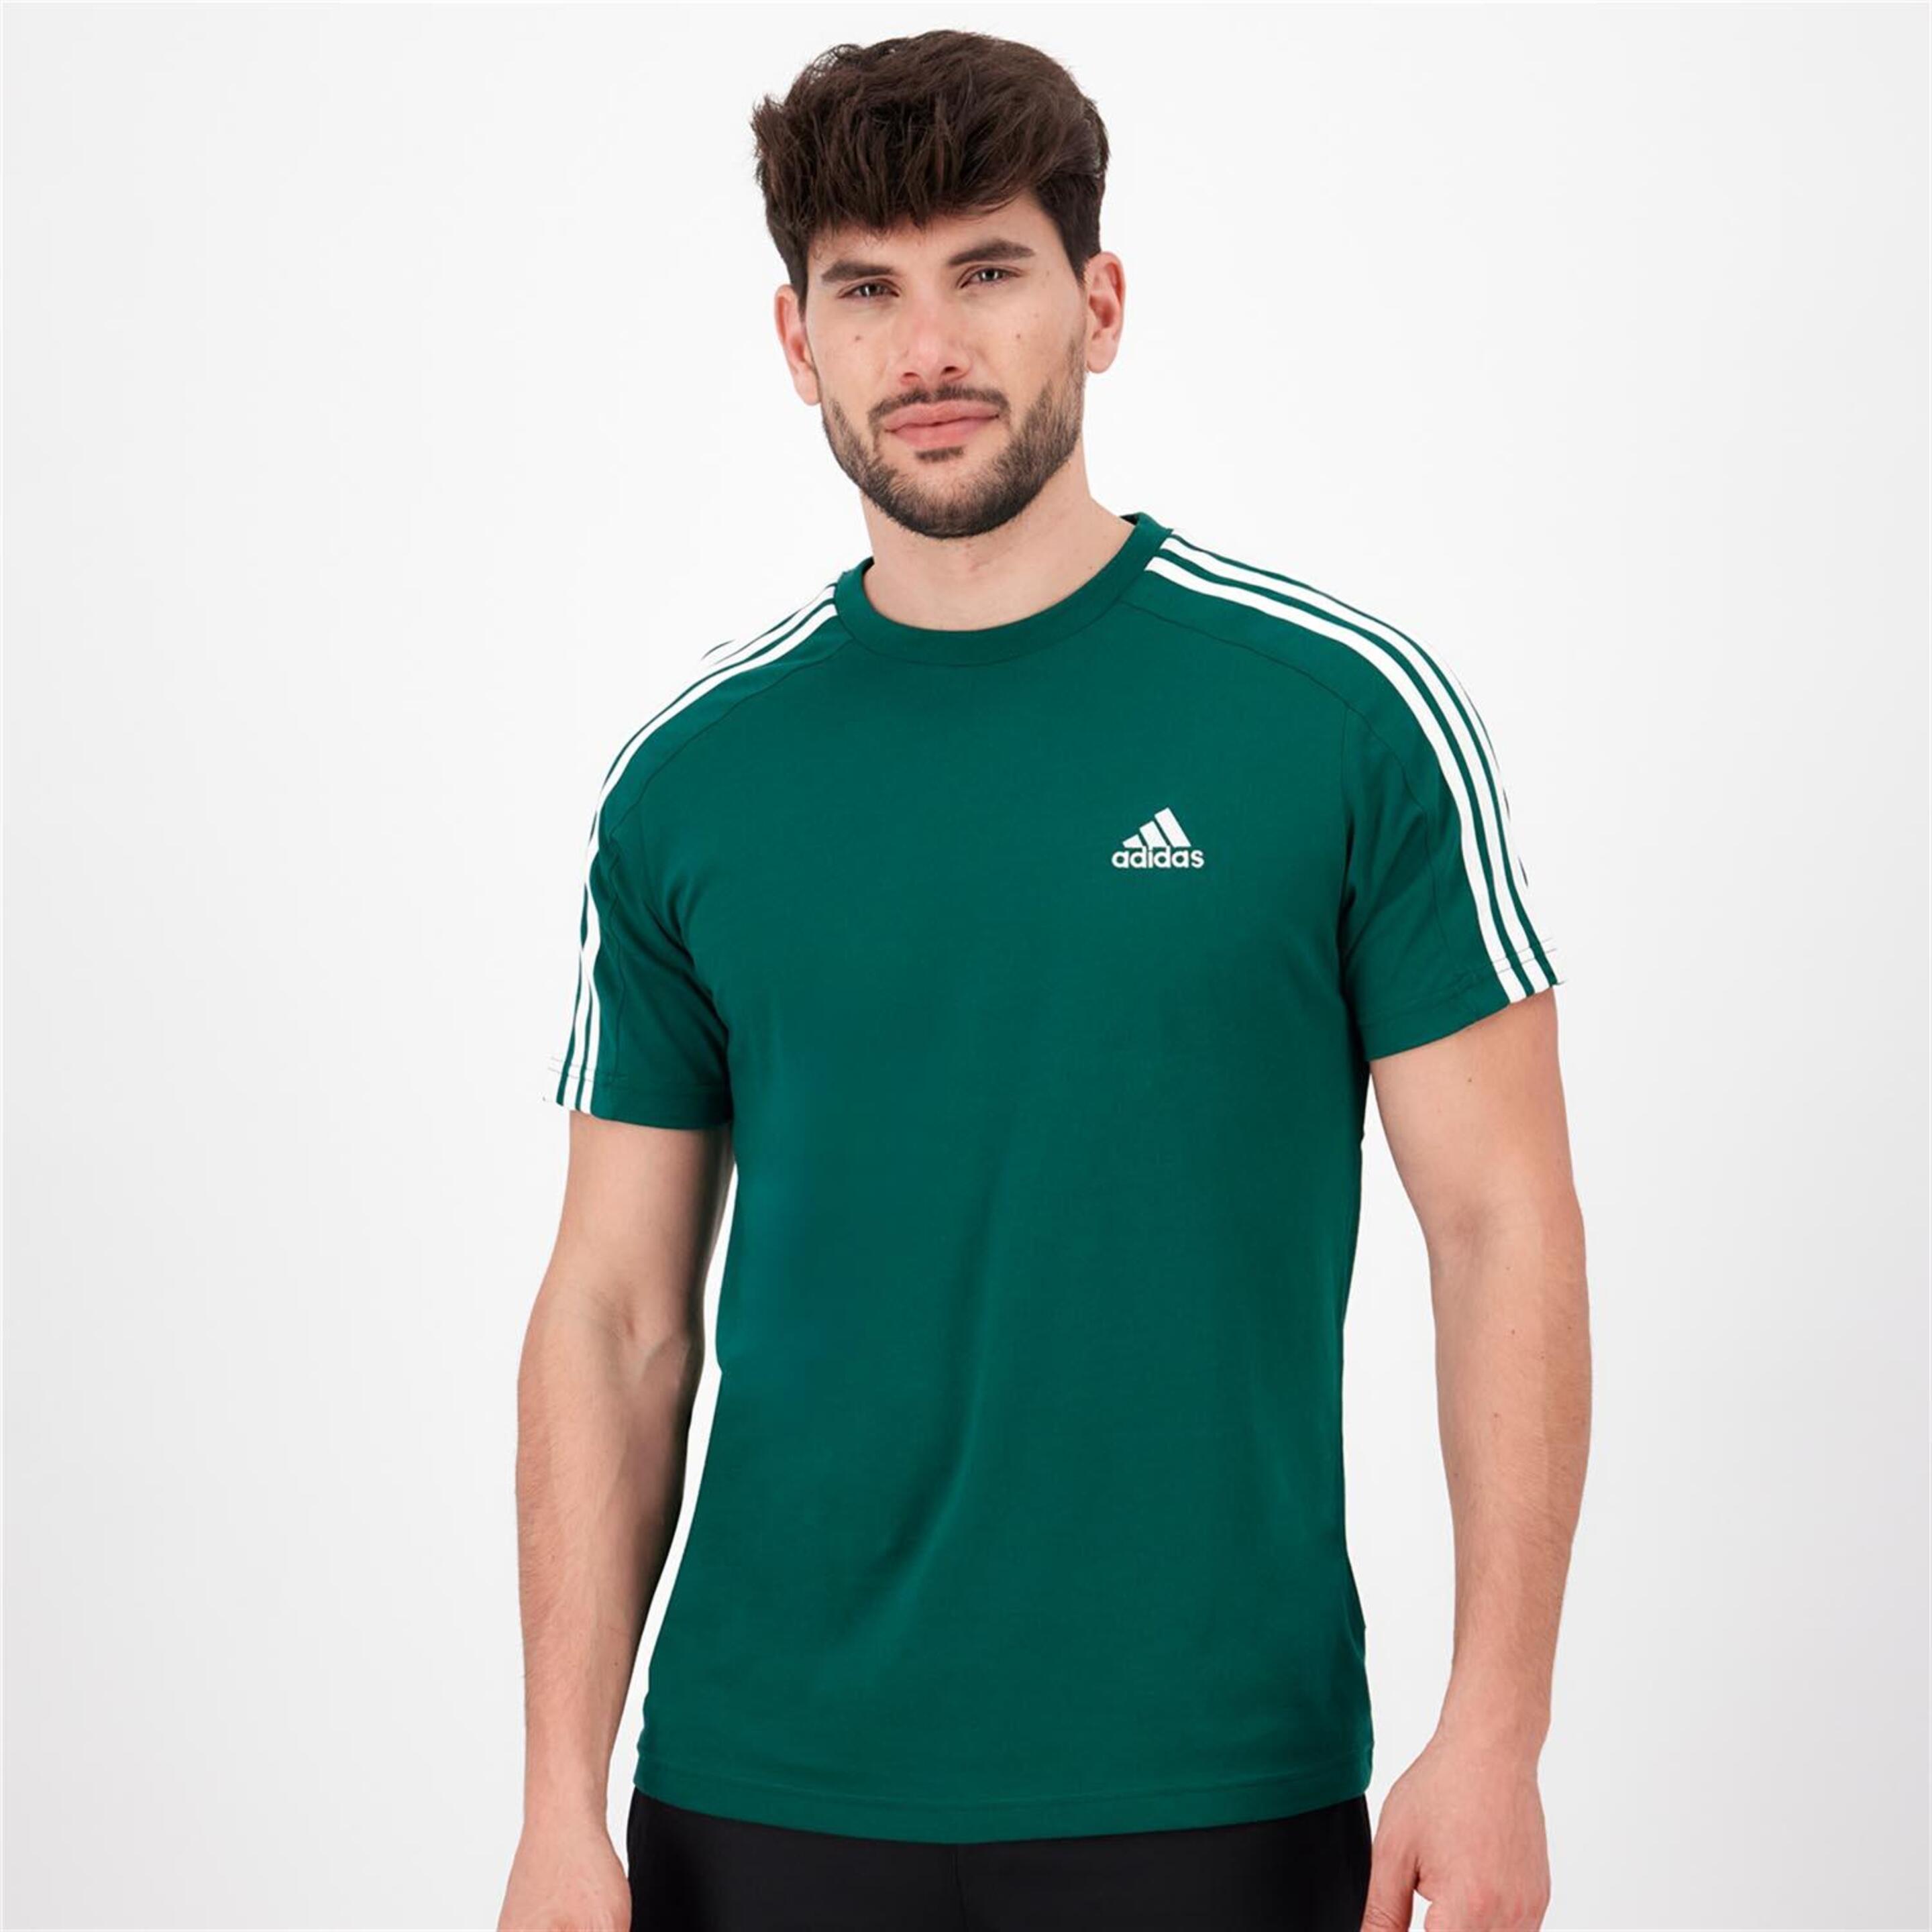 adidas 3s Multi - verde - Camiseta Hombre